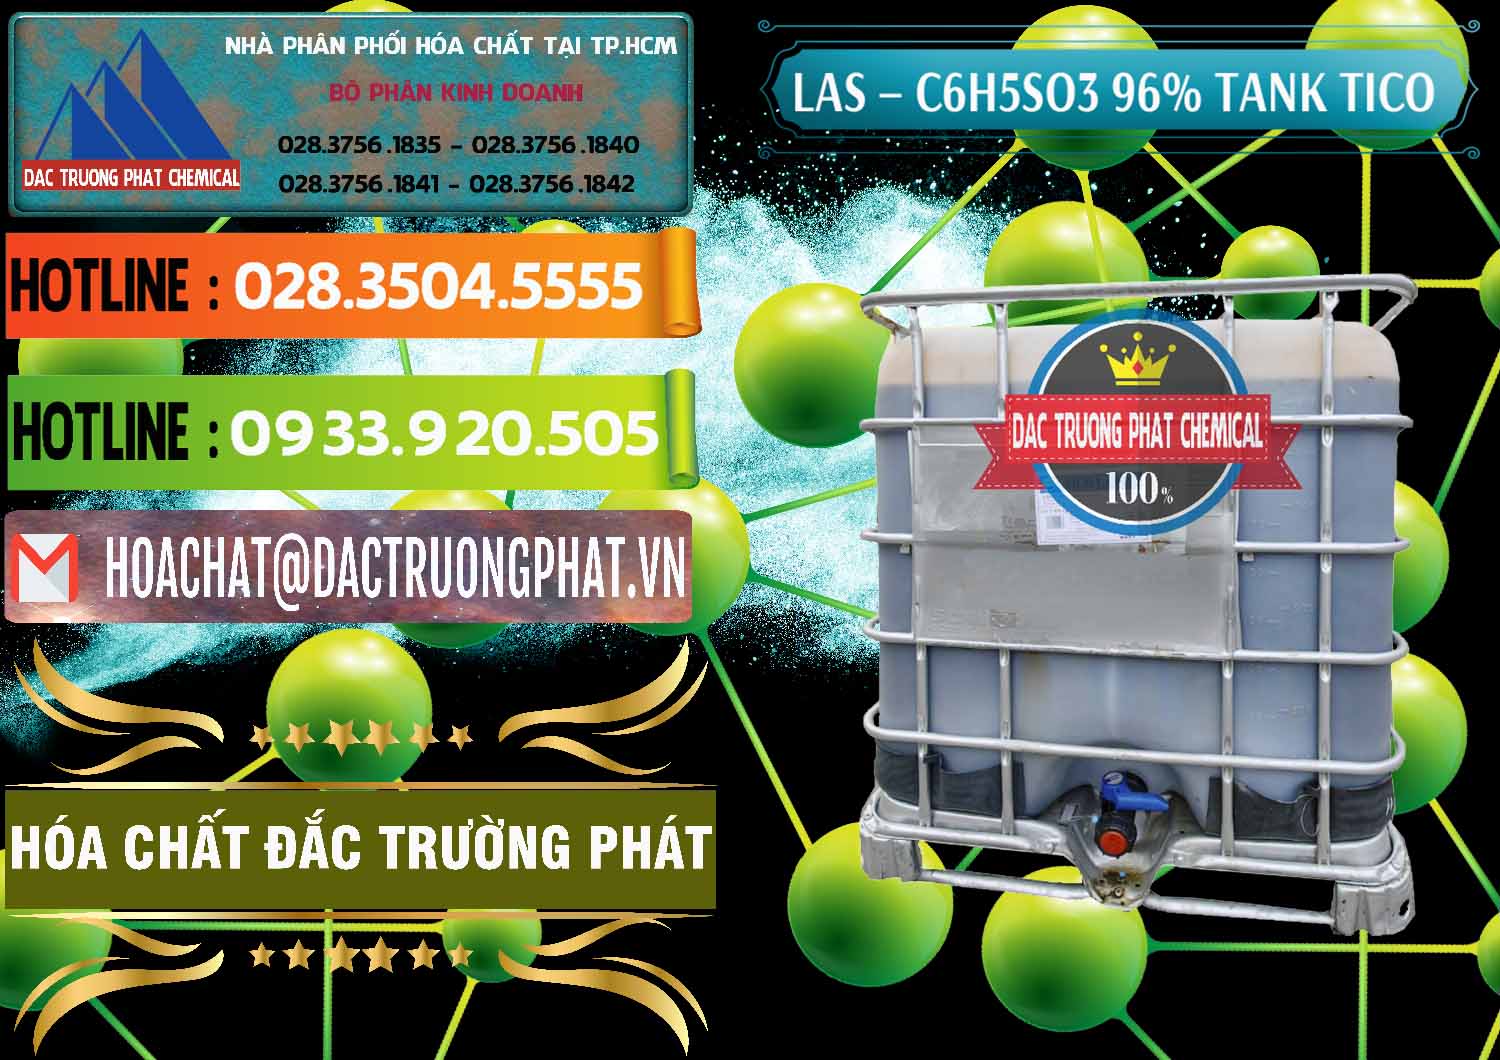 Công ty chuyên kinh doanh và bán Chất tạo bọt Las P Tico Tank IBC Bồn Việt Nam - 0488 - Đơn vị phân phối ( cung cấp ) hóa chất tại TP.HCM - cungcaphoachat.com.vn